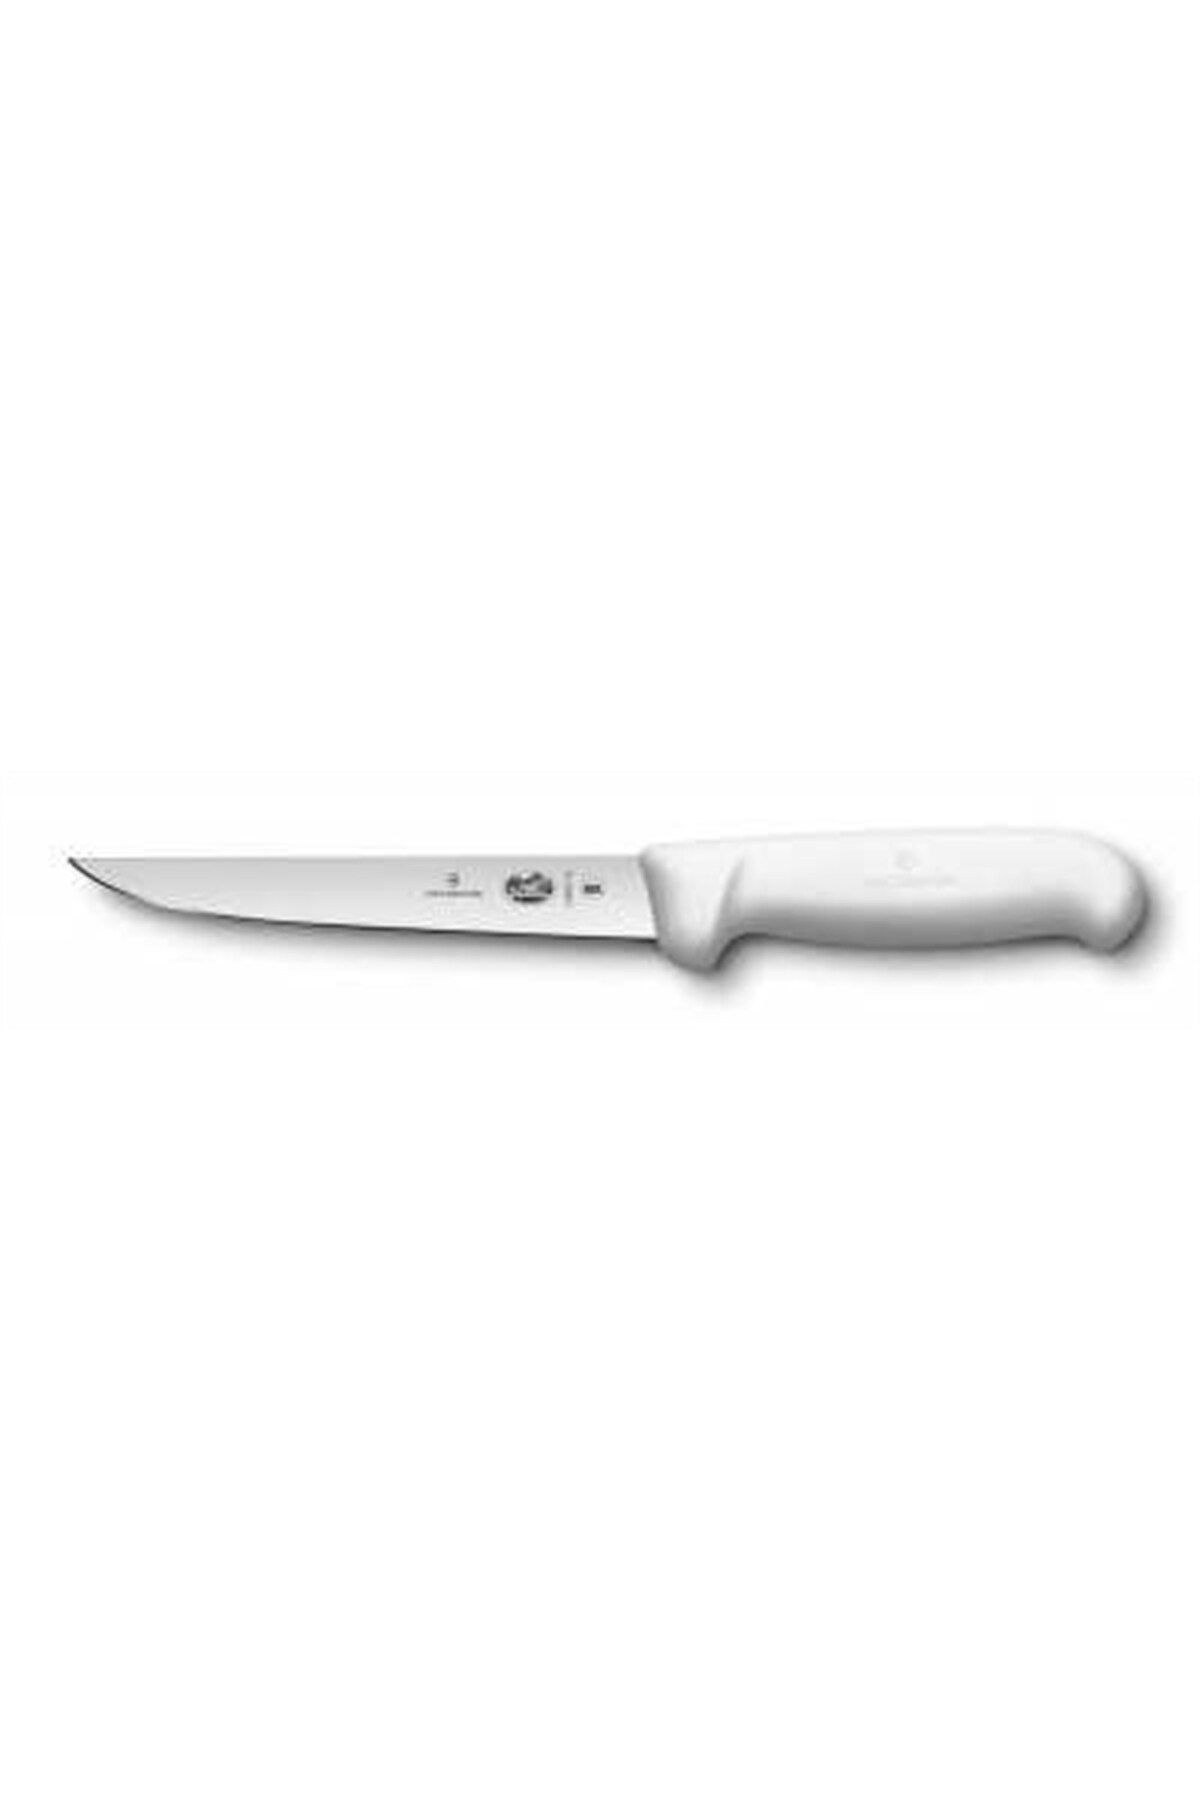 Victor İnox 5.6007.15 15cm Geniş Ağız Sıyırma Bıçağı